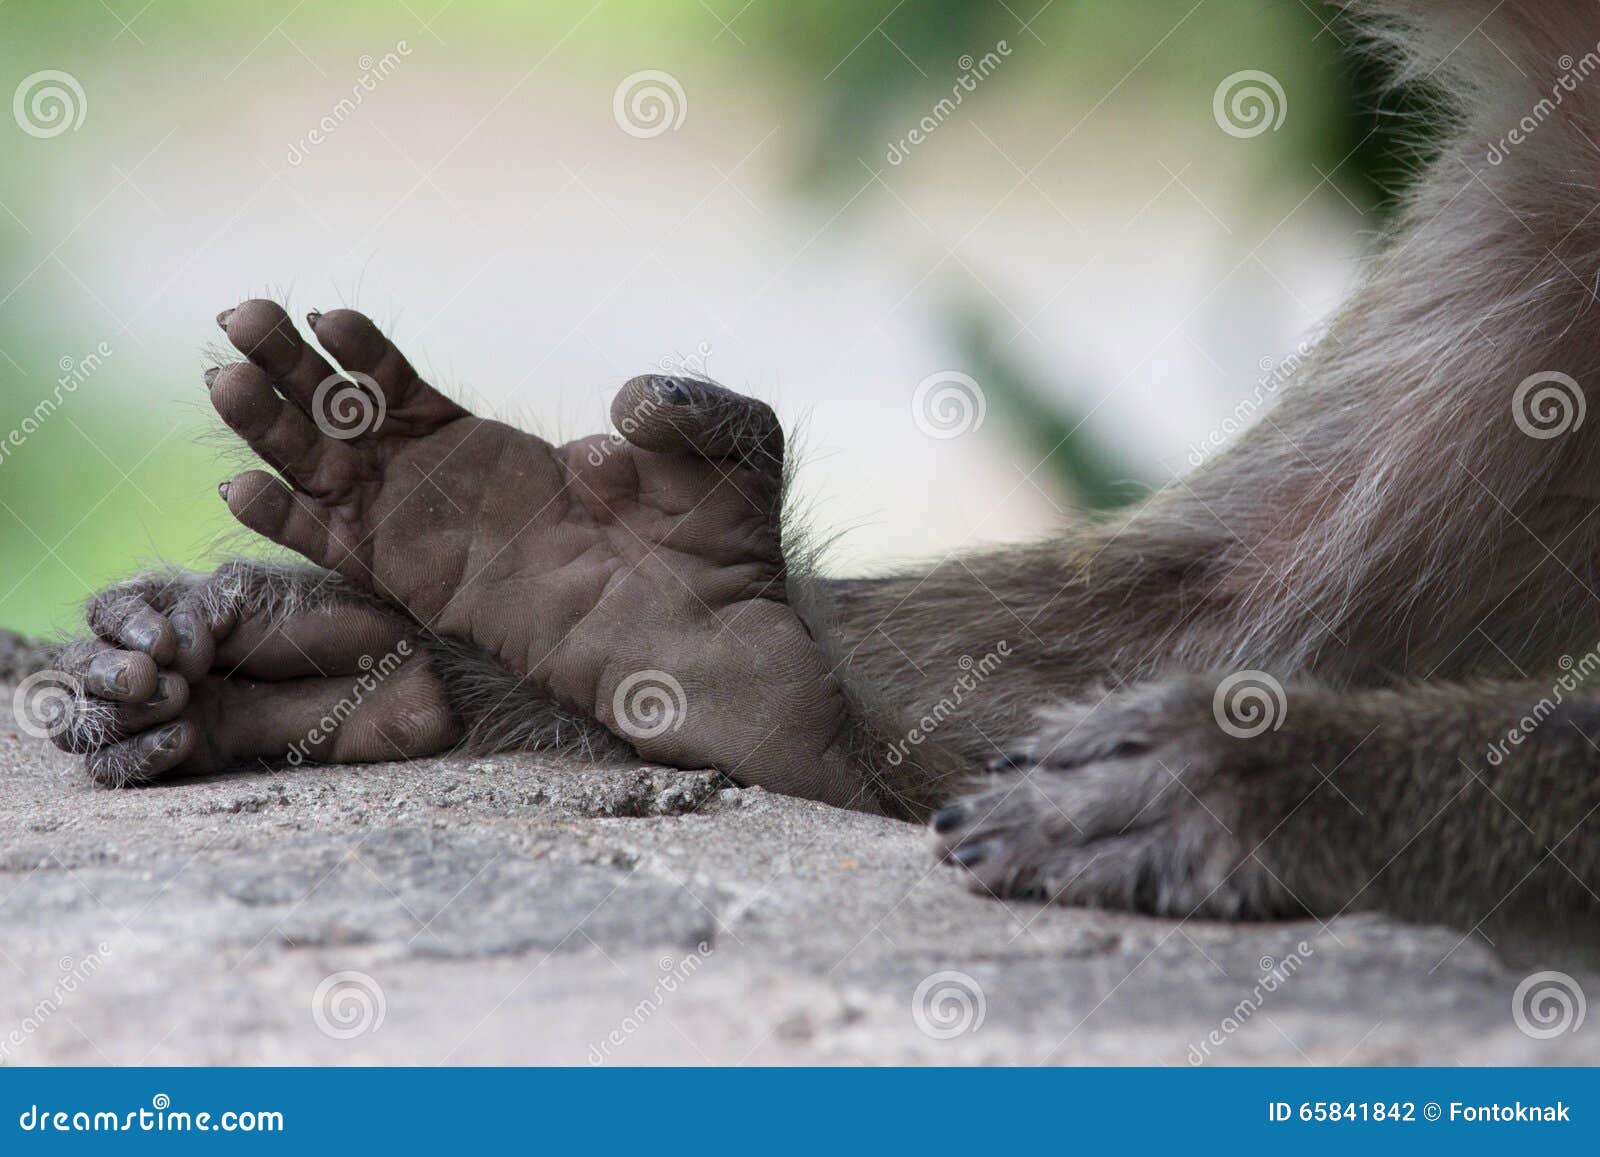 passage betalen Bengelen Monkey hands and feet stock photo. Image of monkey, hands - 65841842